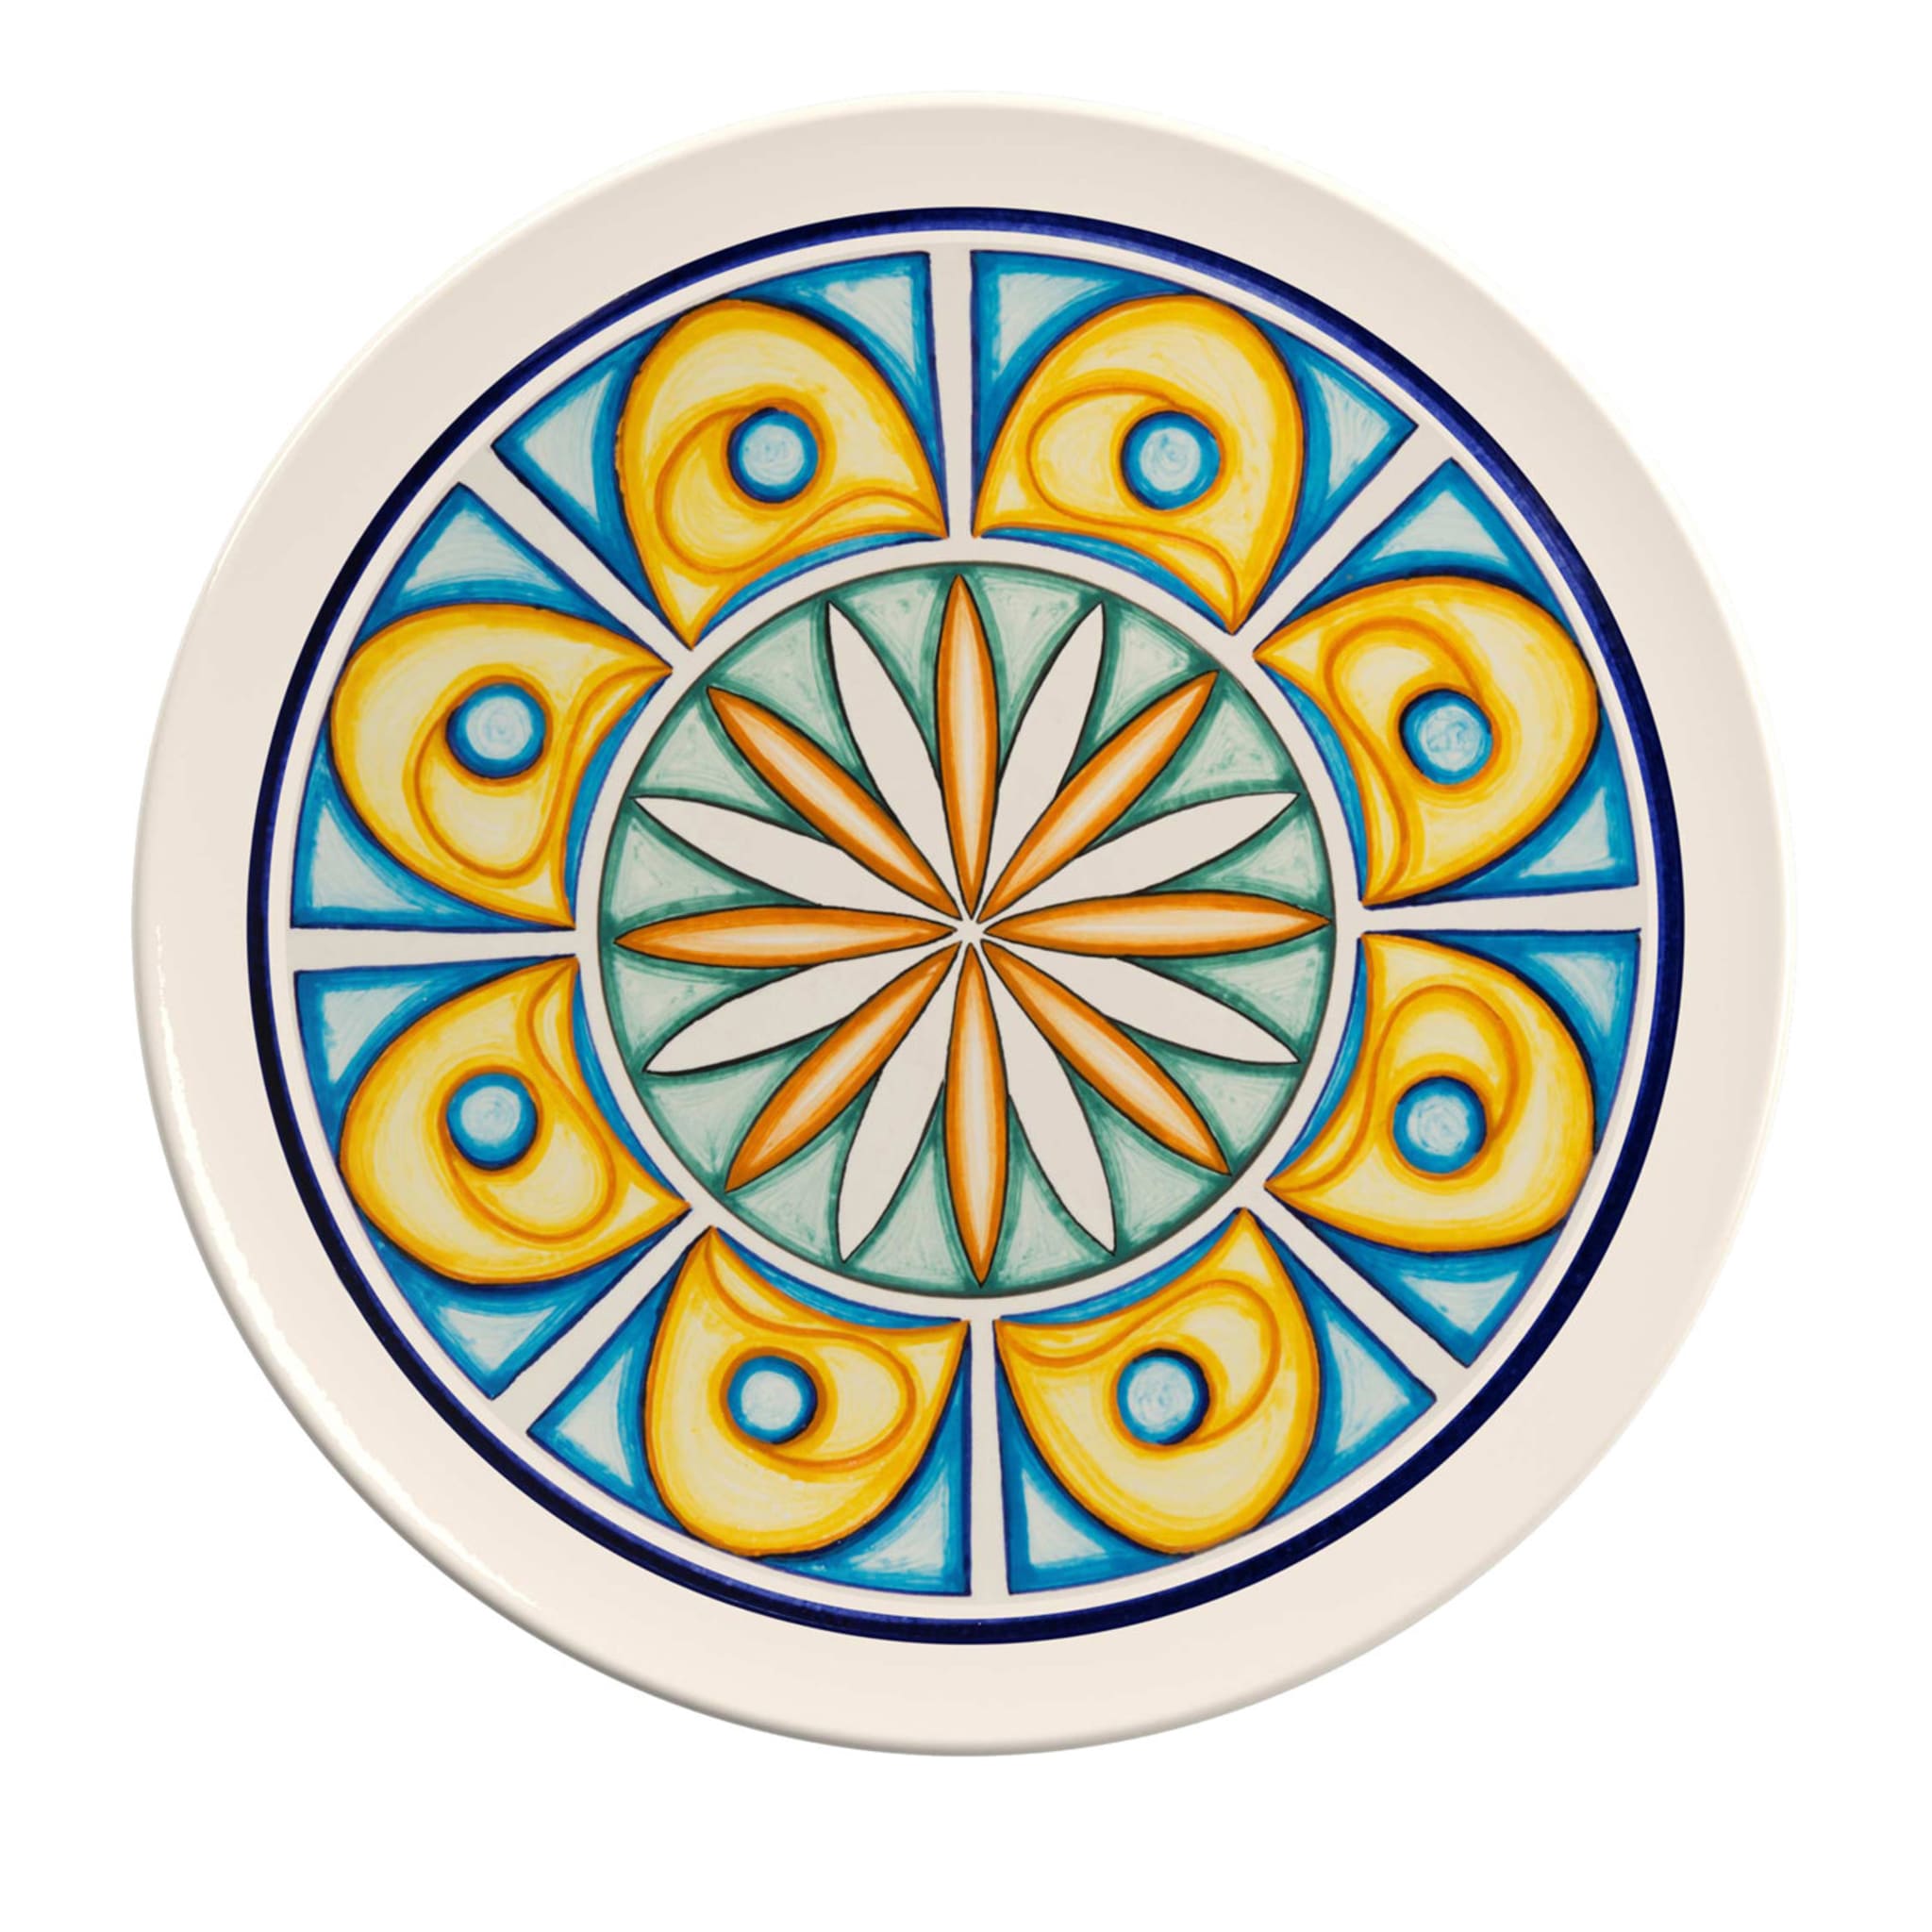 Colapesce Occhi Gialli Decorative Plate - Main view